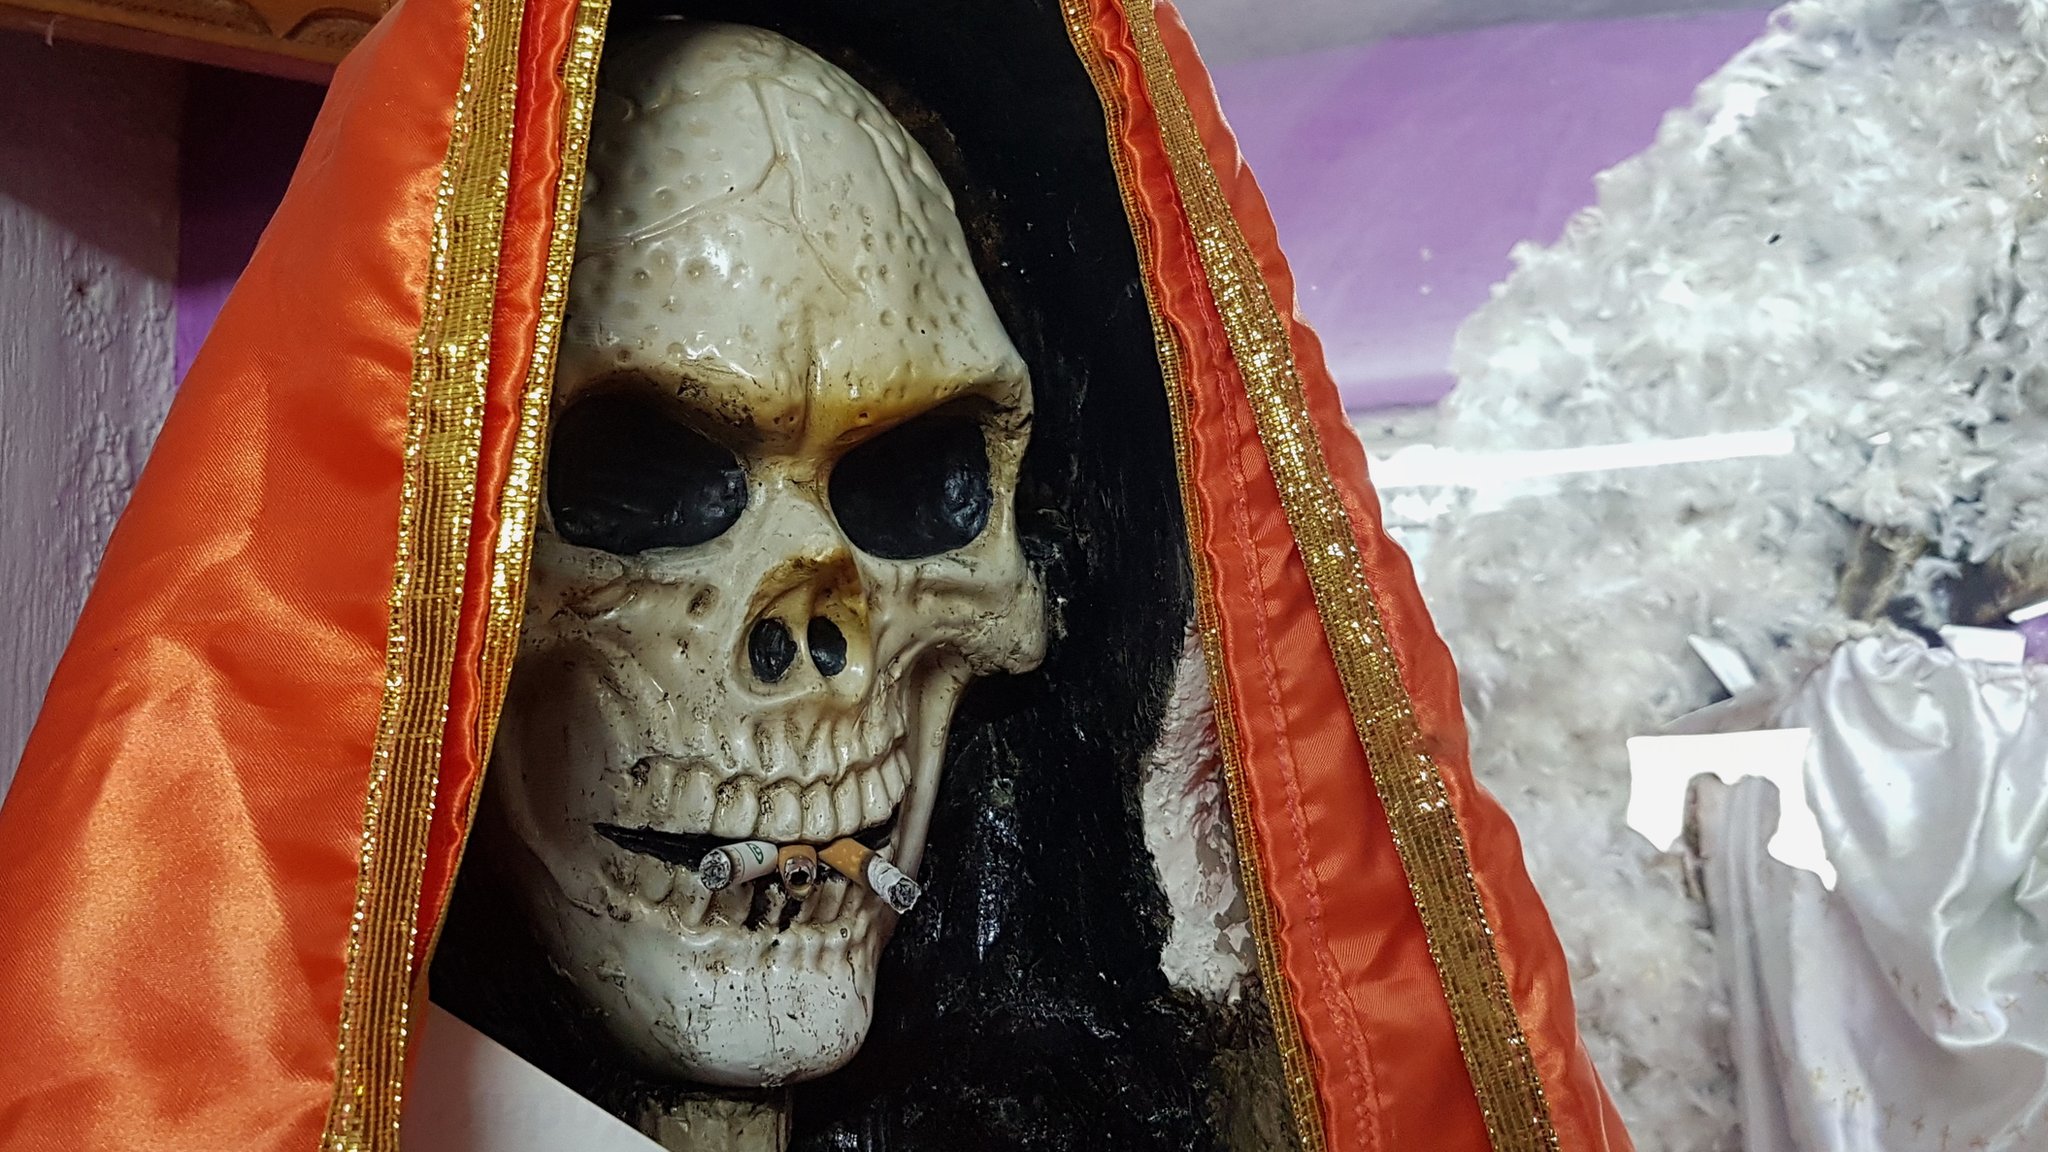 Santa Muerte: The rise of Mexico's death 'saint'